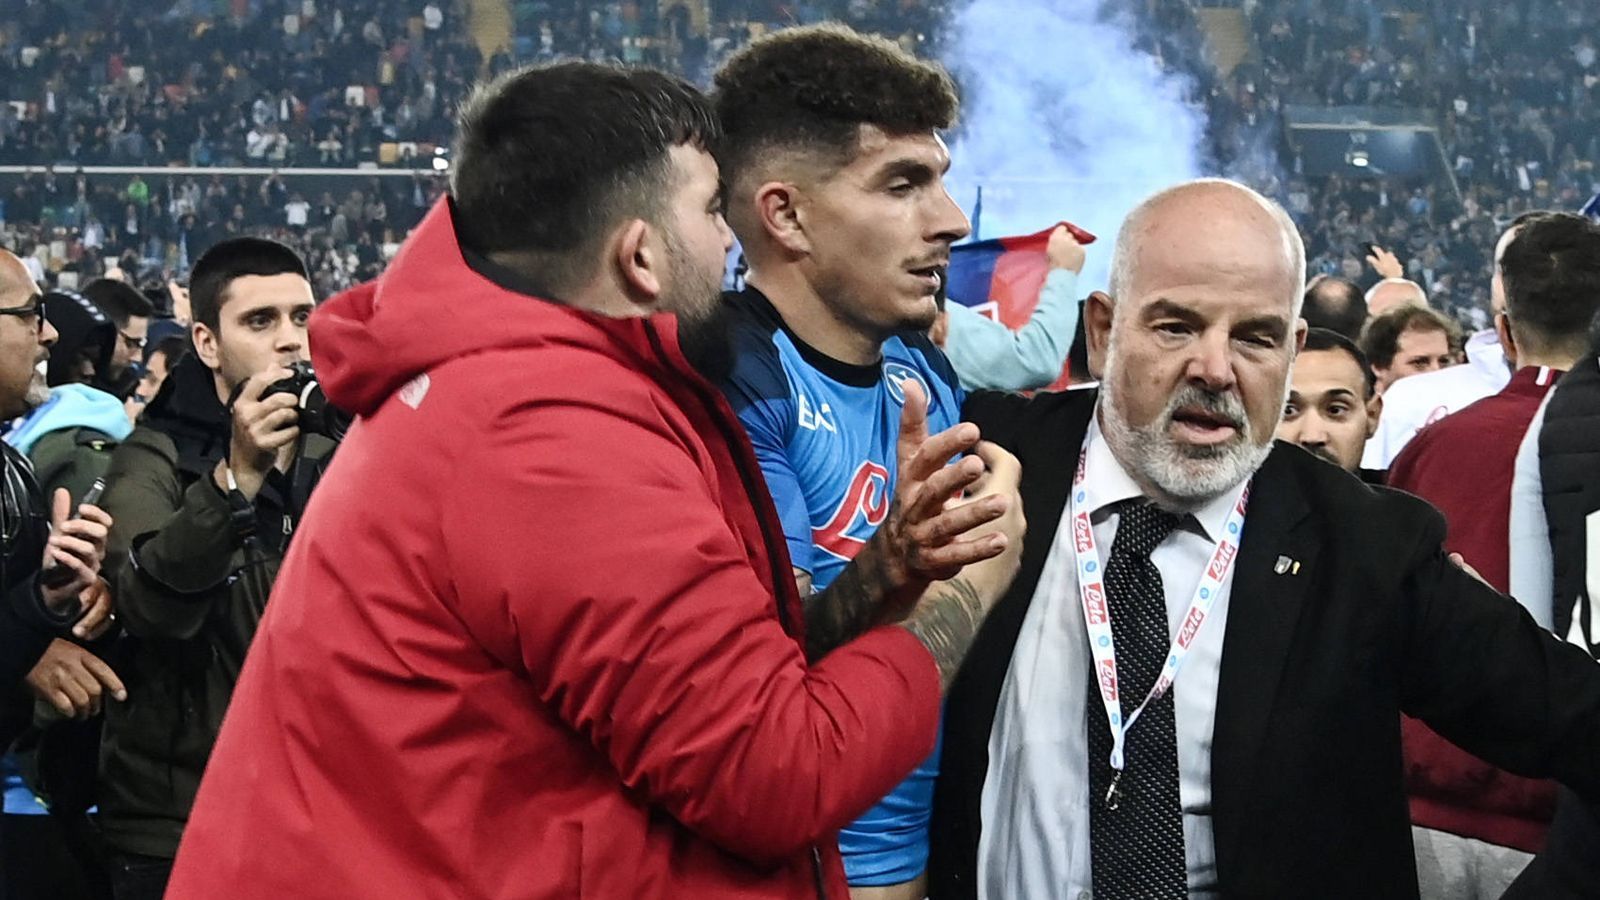 
                <strong>Spieler von Fans umringt</strong><br>
                Die frischgebackenen Meister-Spieler wie Giovanni Di Lorenzo konnte sich gegen den Fan-Ansturm kaum erwehren, wurden von den Anhängern umringt, geherzt, um Selfies gebeten. 
              